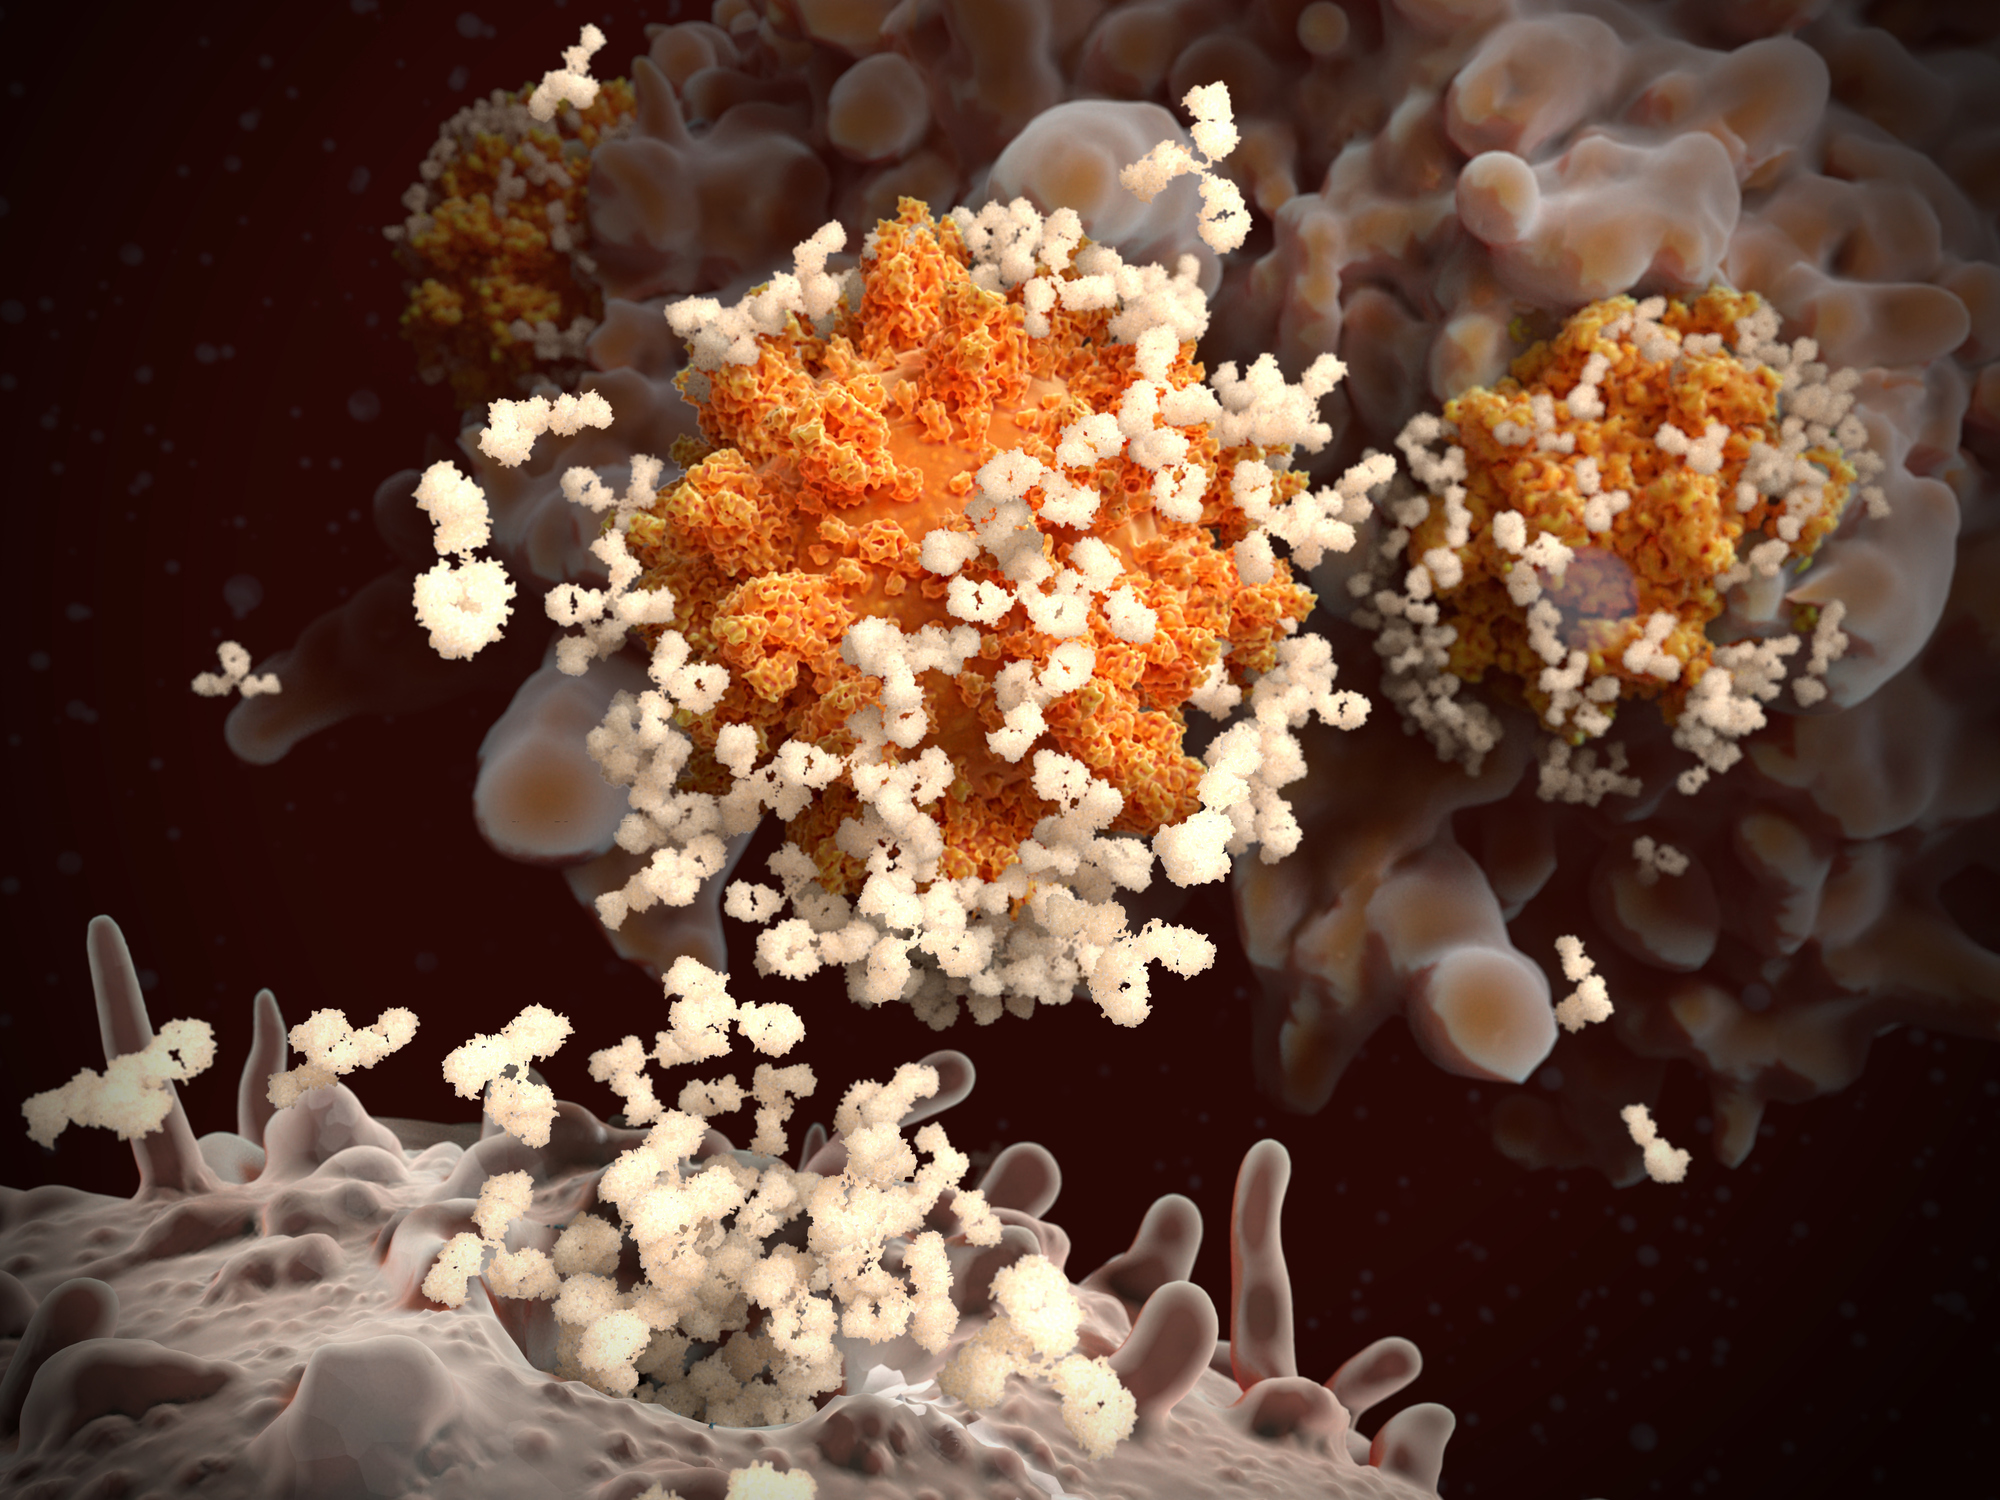 Respuesta inmune al SARS-CoV-2: los linfocitos B liberan anticuerpos que se unen y marcan los coronavirus, por lo que los virus no pueden penetrar en sus células objetivo y son engullidos y destruidos por un macrófago (célula en el fondo).